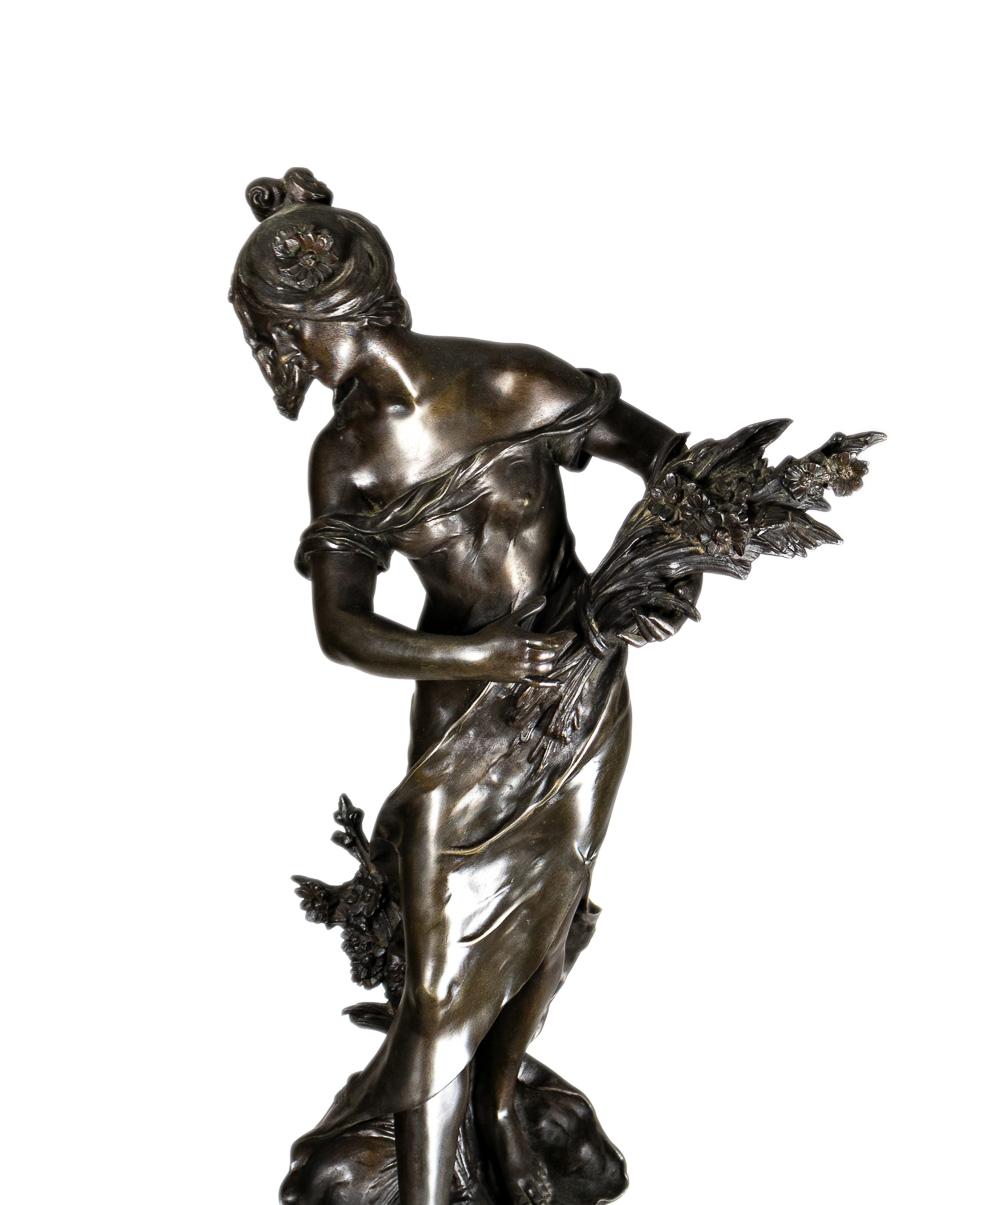 Belle-Époque-Statue und -Säule aus Zinn aus dem späten 19. Jahrhundert: Königin der Felder / Reine Des Pres, eine junge Frau in wallendem Kleid mit einem Weizengesteck in der Hand.
Signiert 